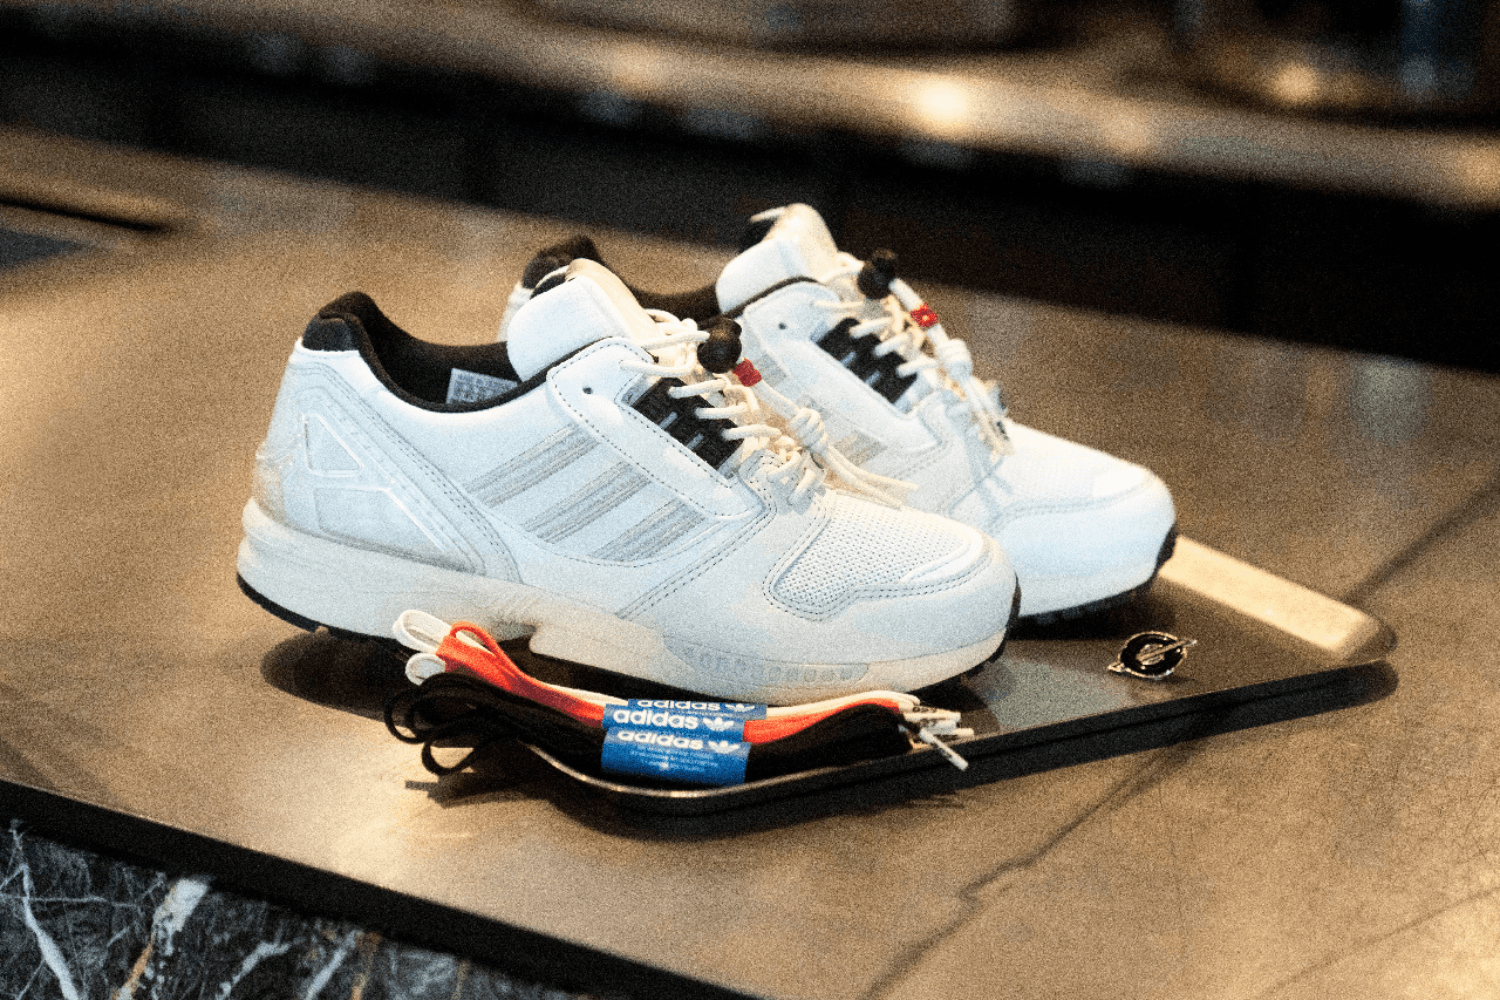 Die adidas Adilicious Serie geht mit dem ZX in Berlin weiter